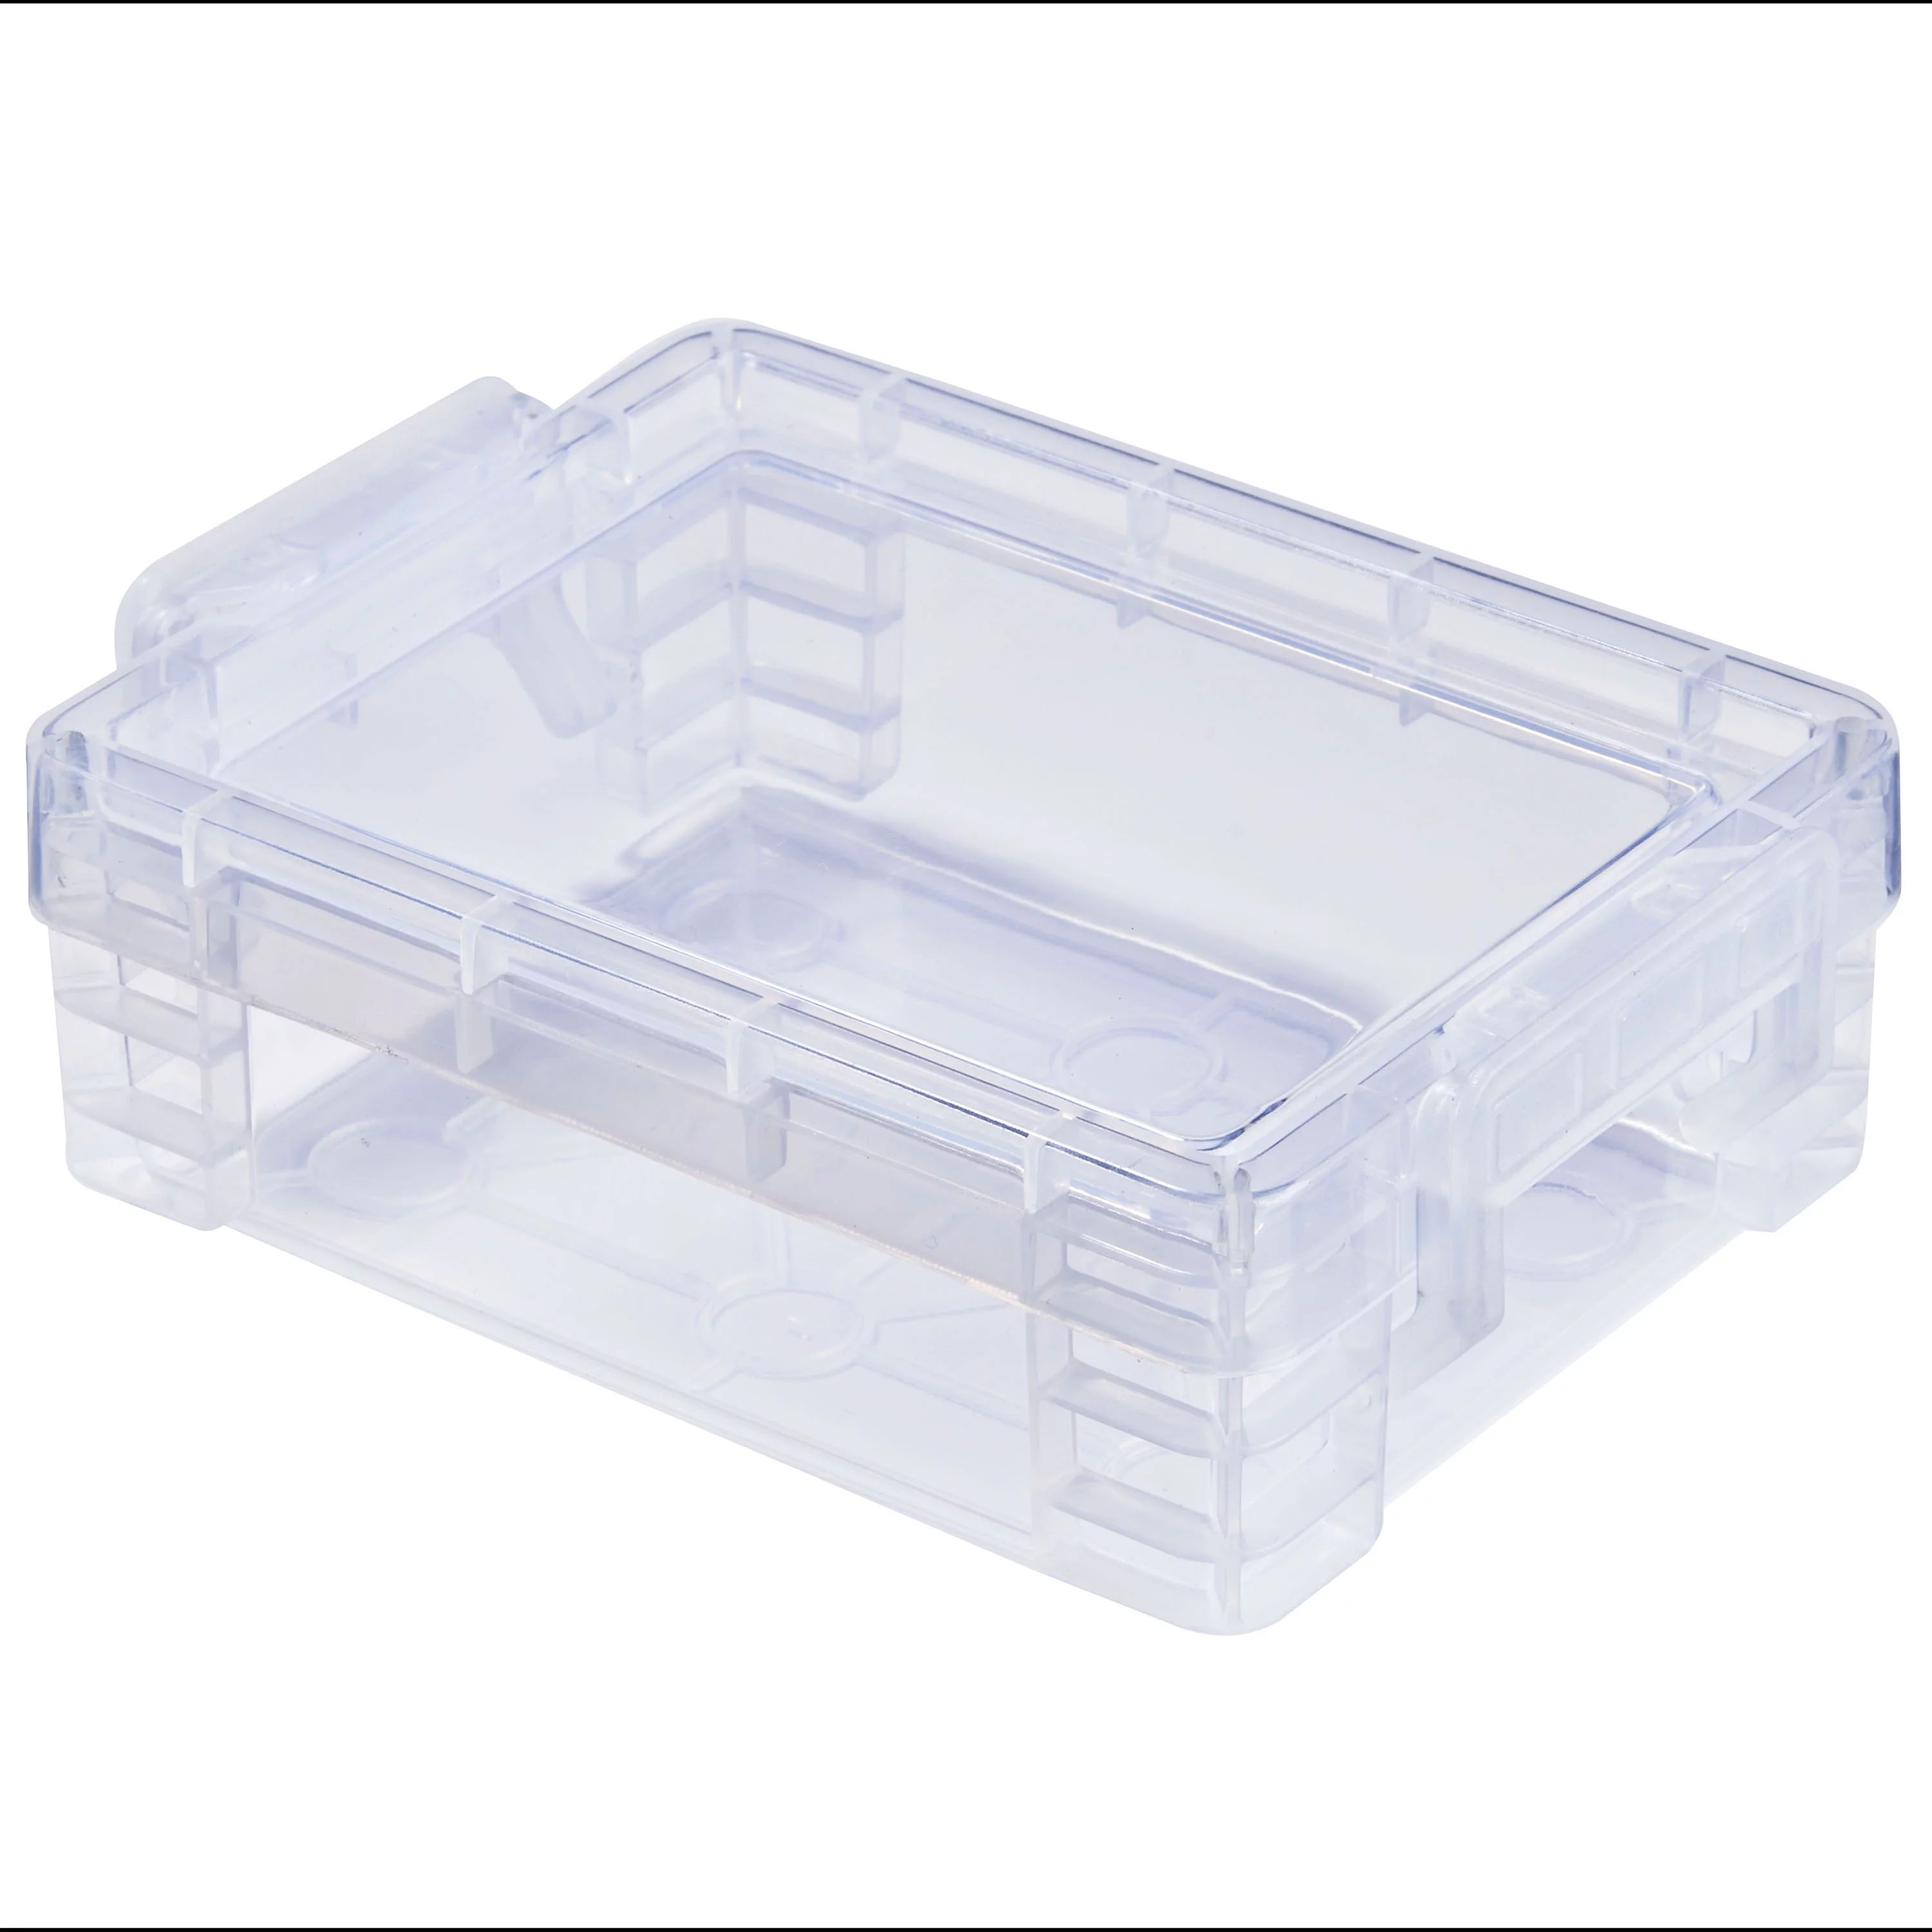 Pen + Gear Plastic Storage Box, Clear | Walmart (US)